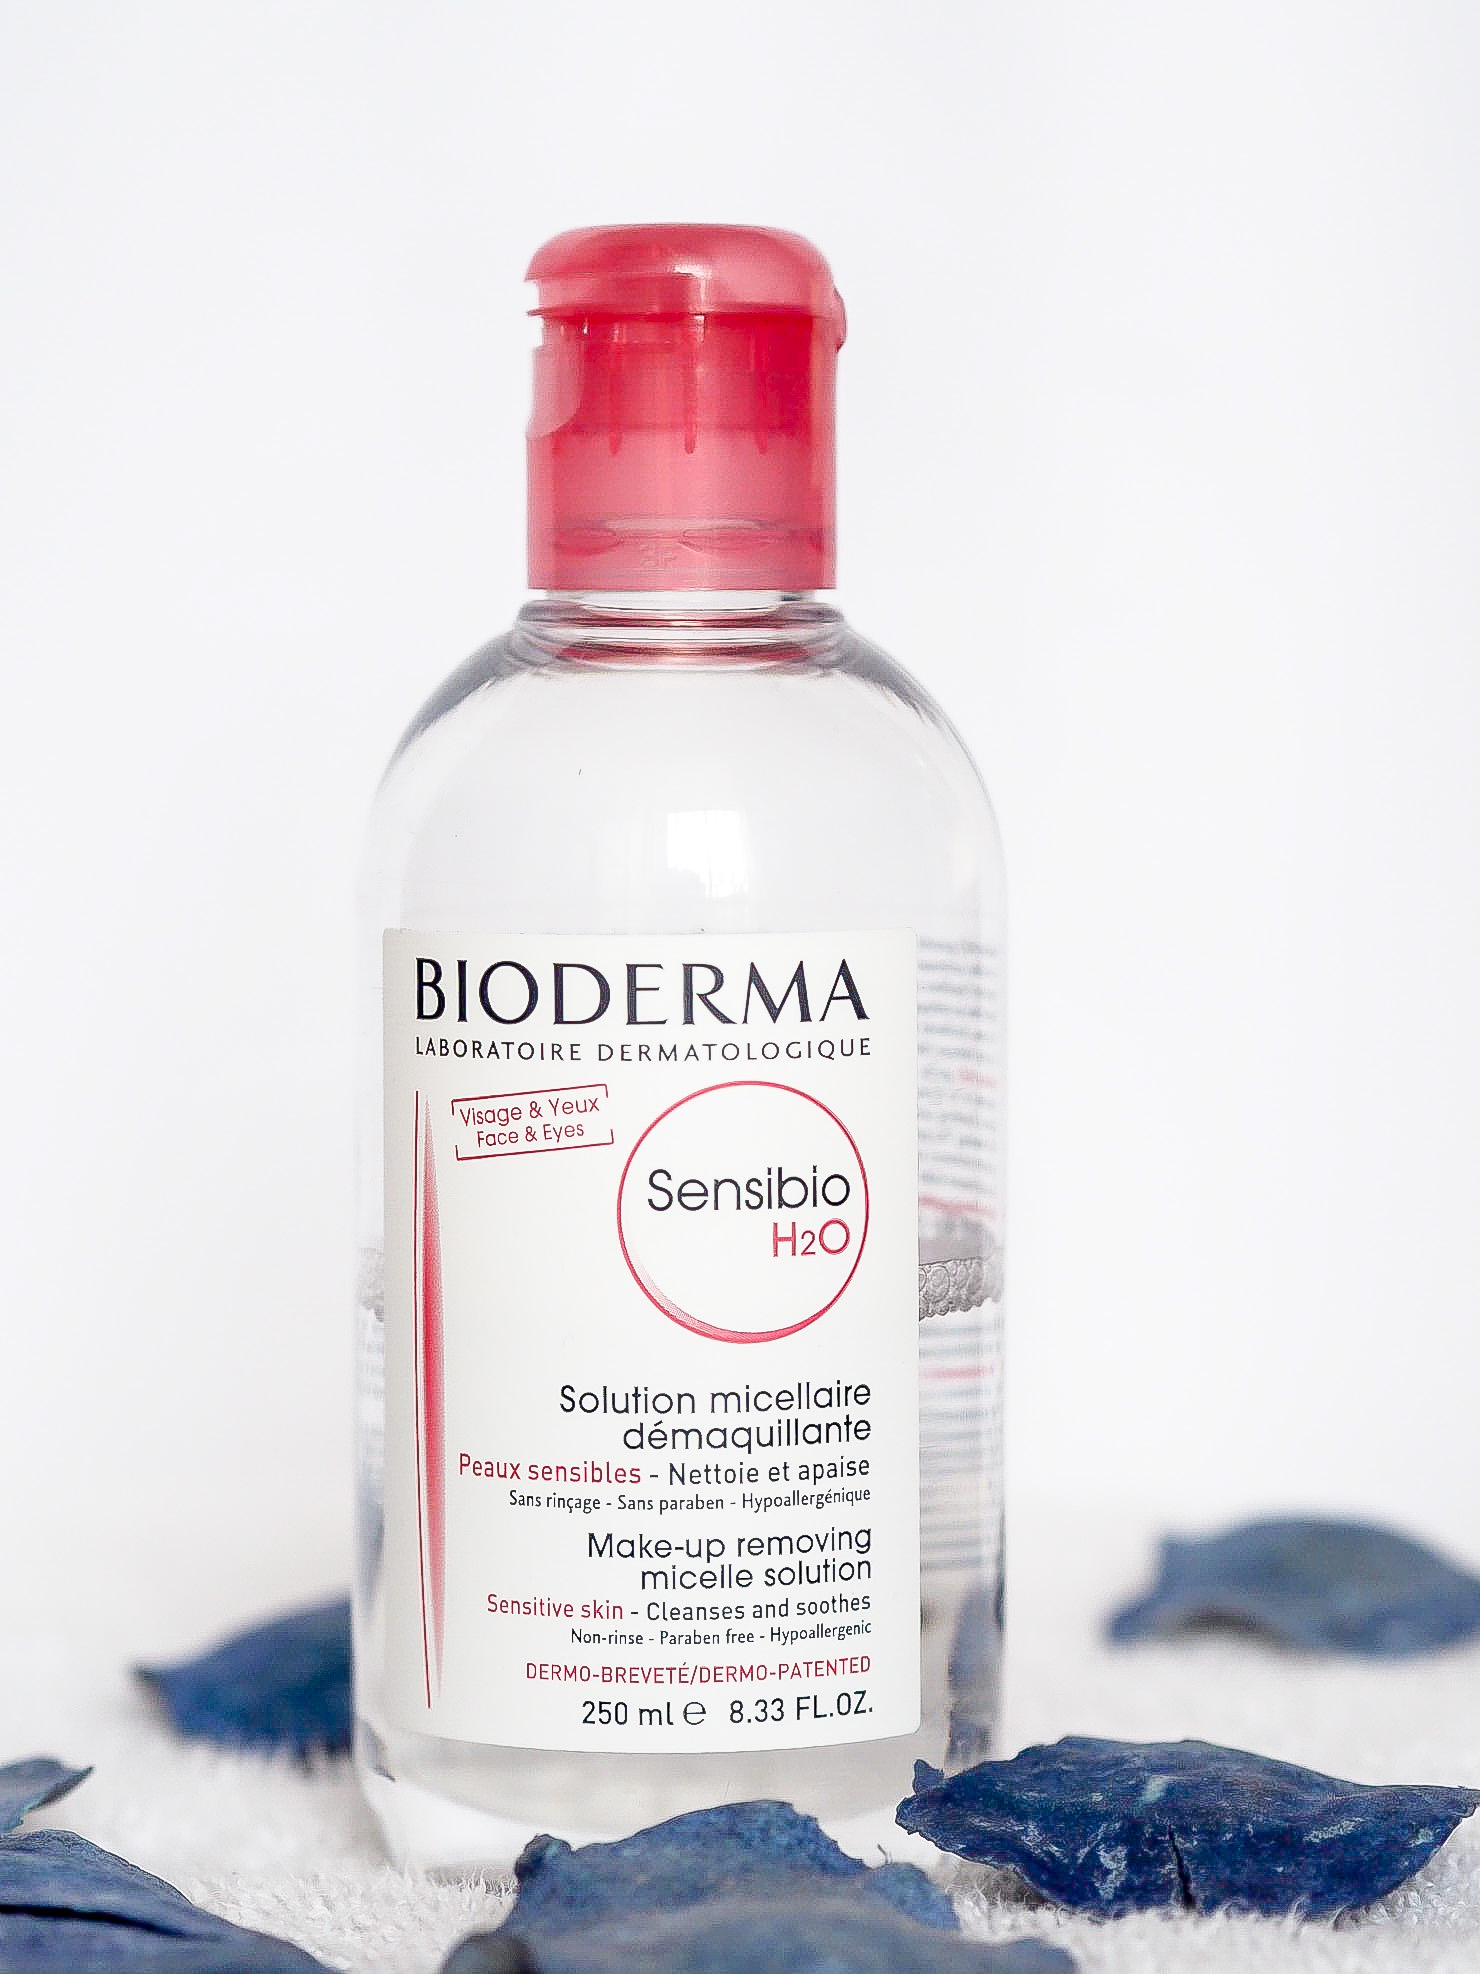 Bioderma sensibio micellar water review 